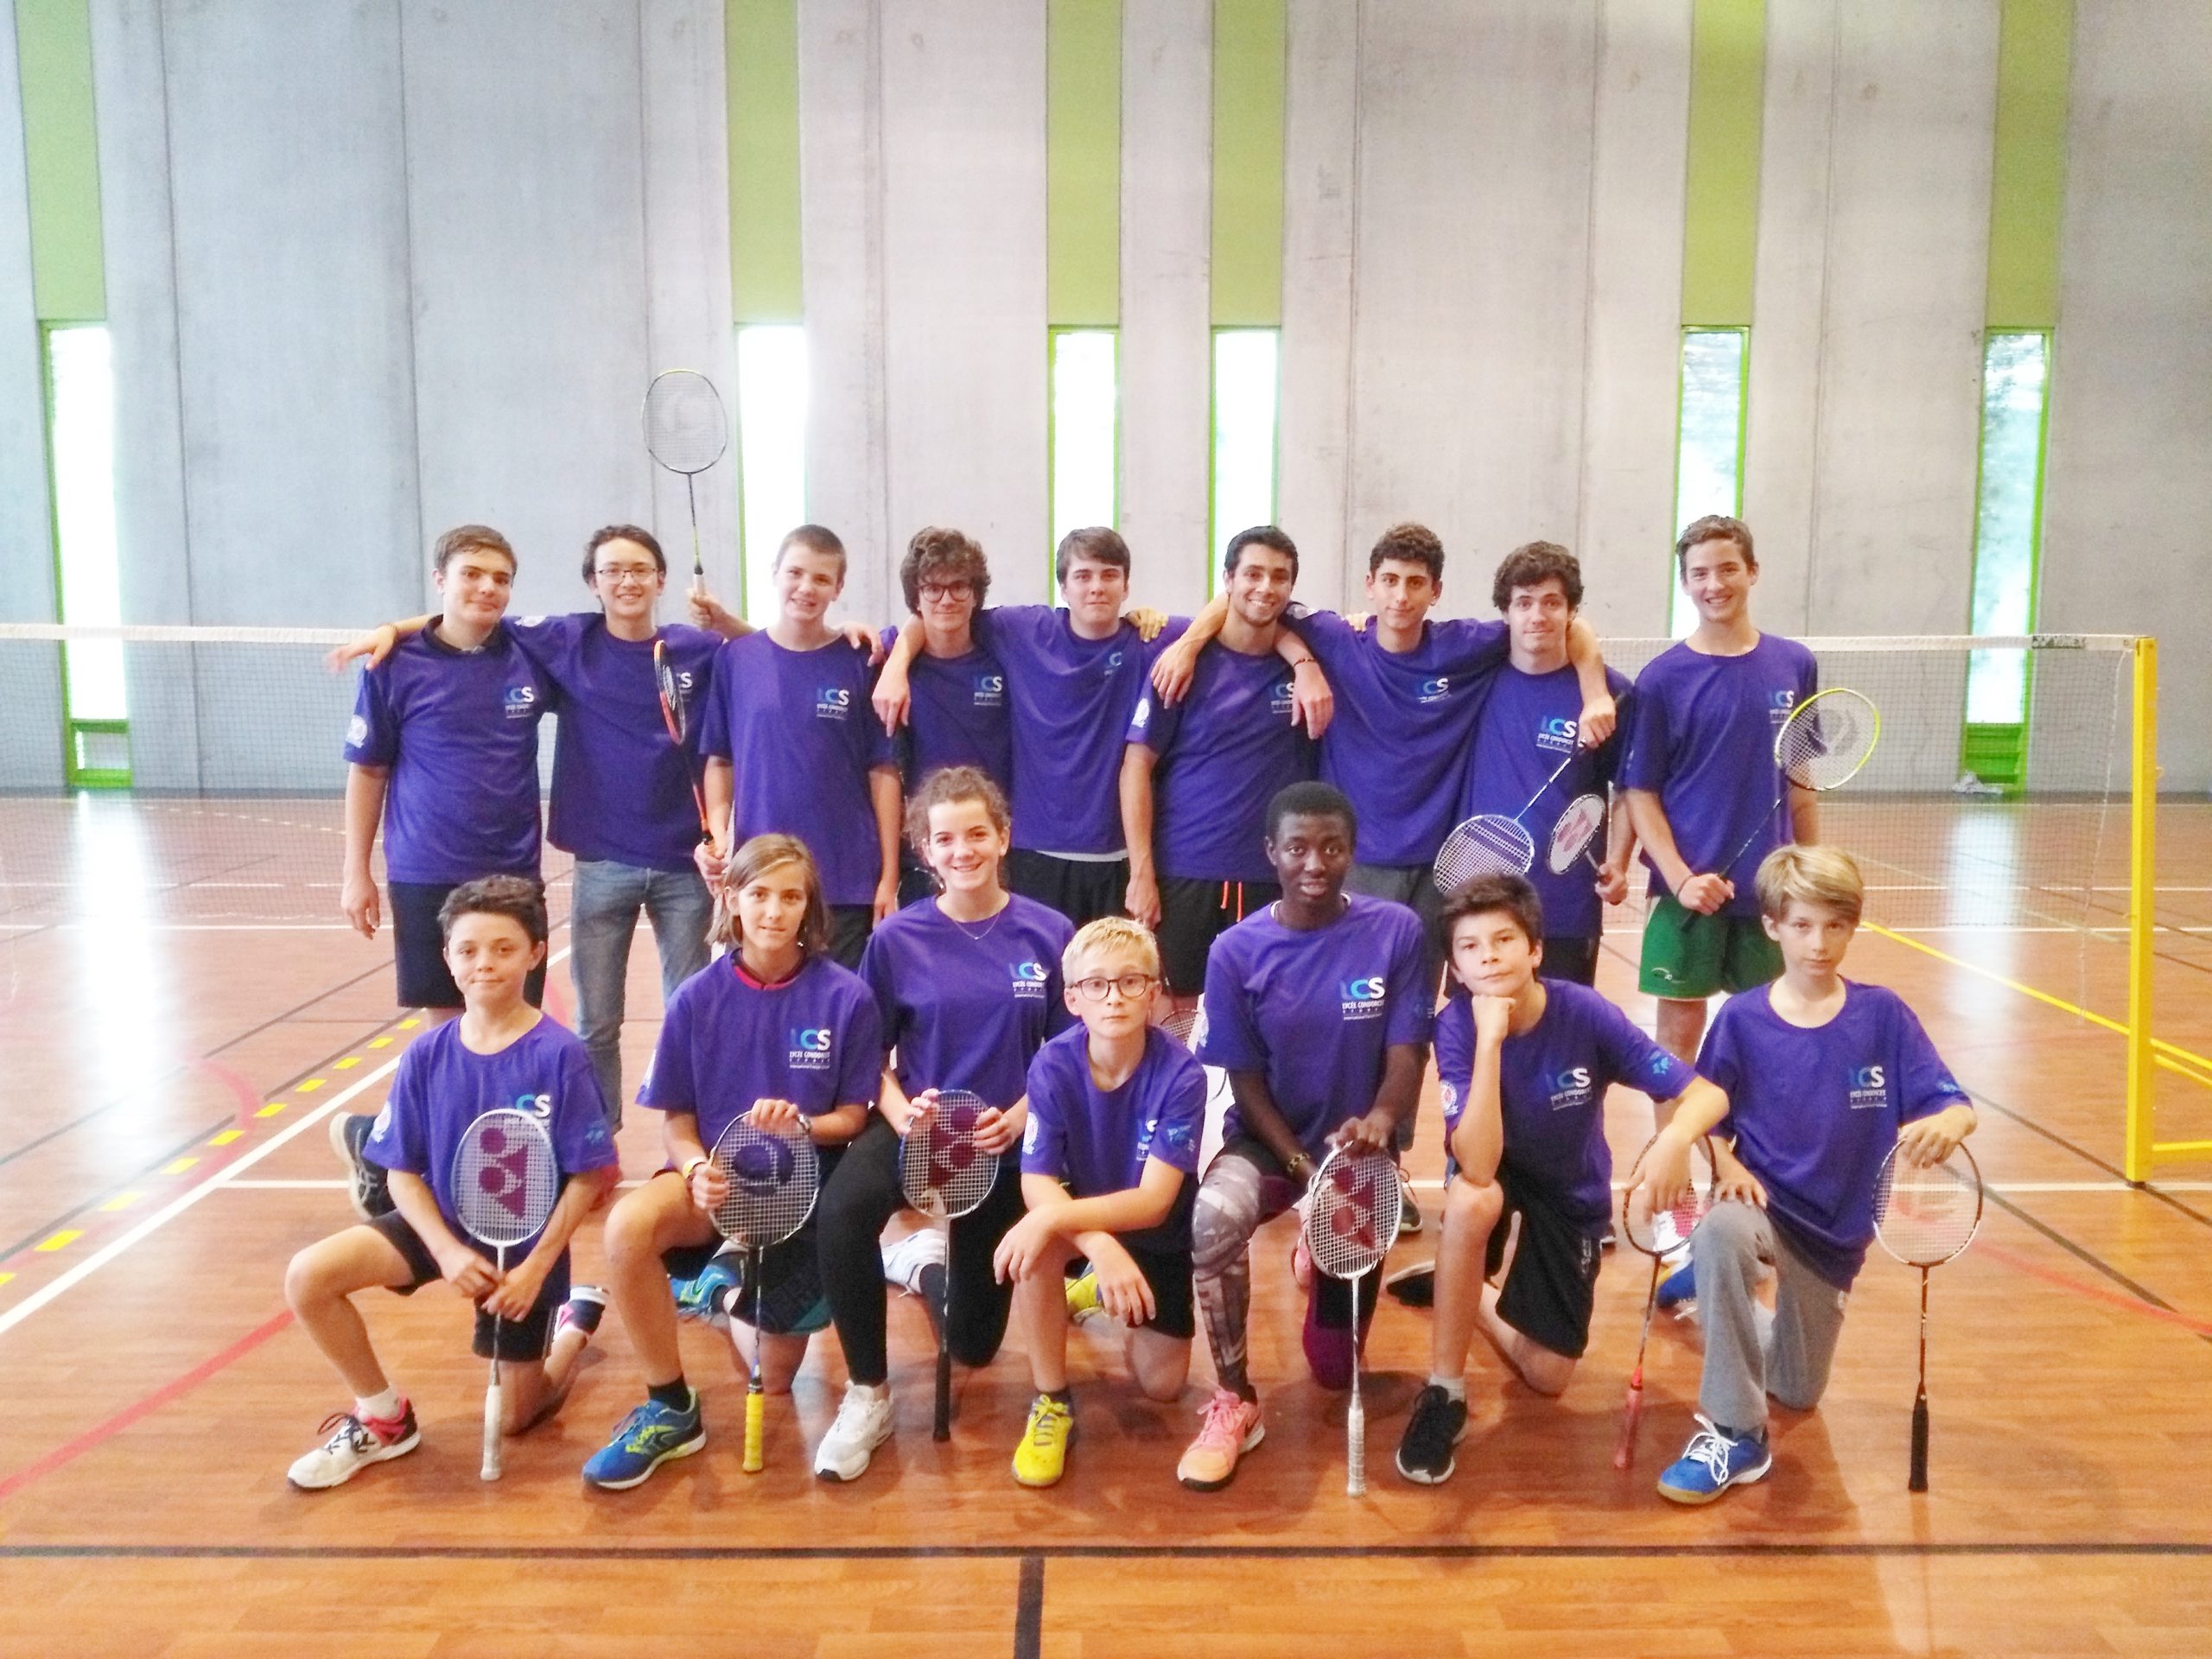 Lycée Condorcet Sydney elite badminton squad in our new multipurpose gym